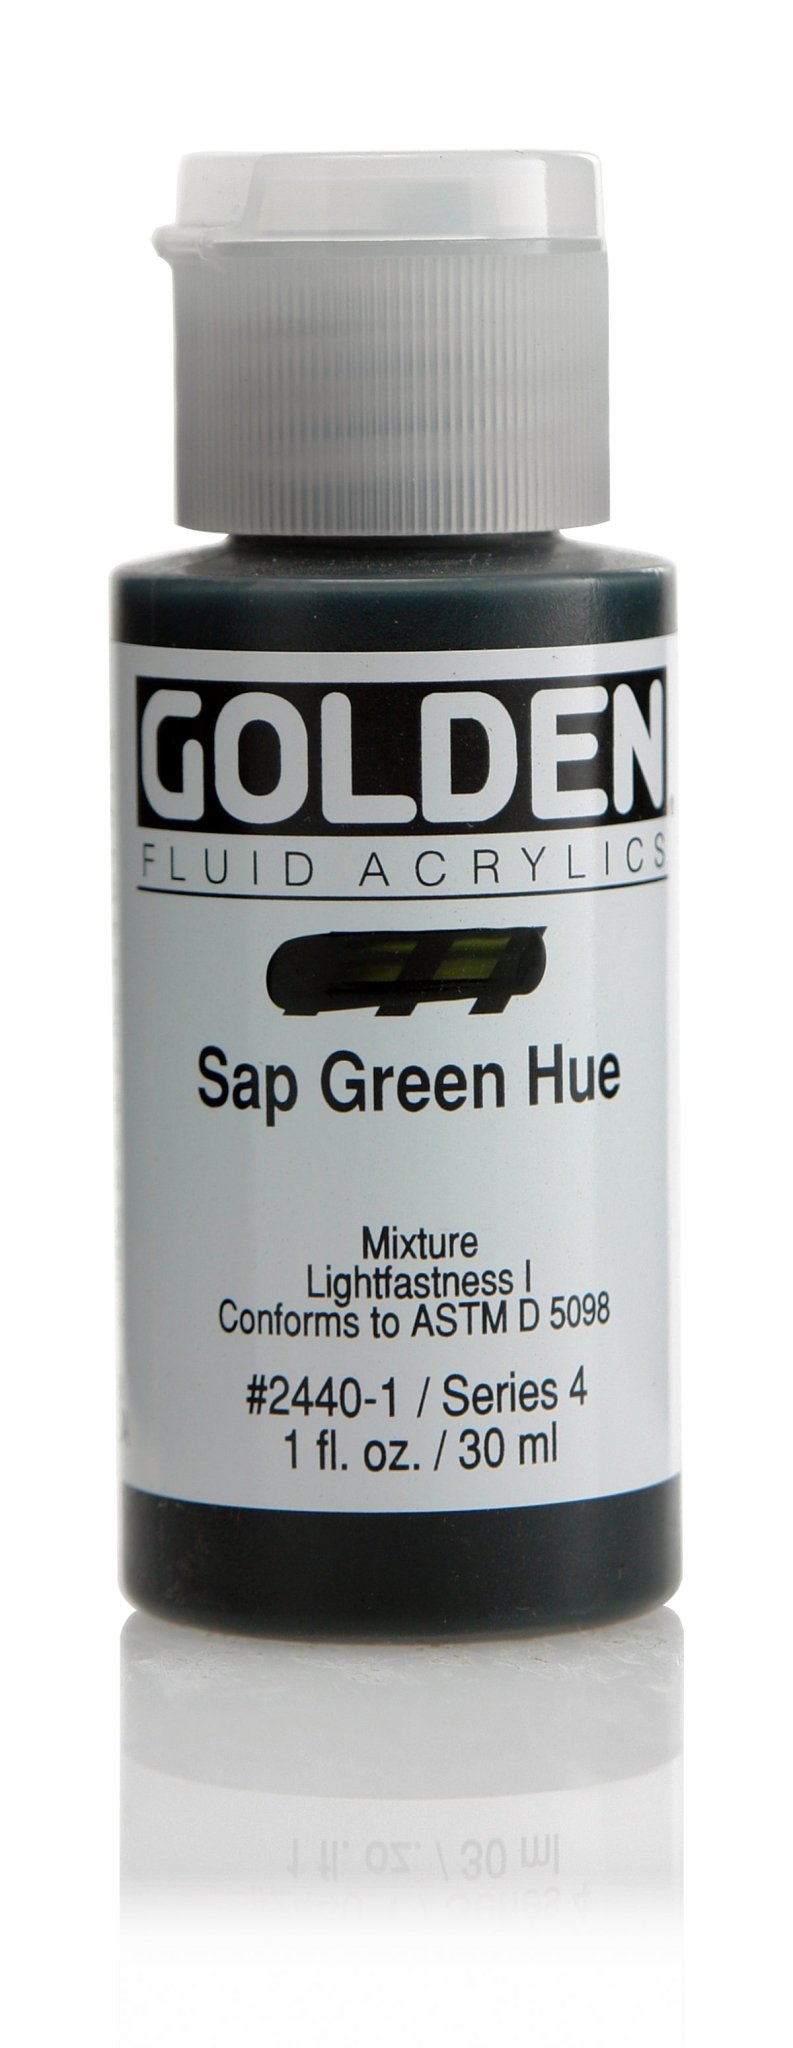 Golden Fluid Acrylics - Sap Green Hue - 30ml - Create A Little Magic (Pty) Ltd